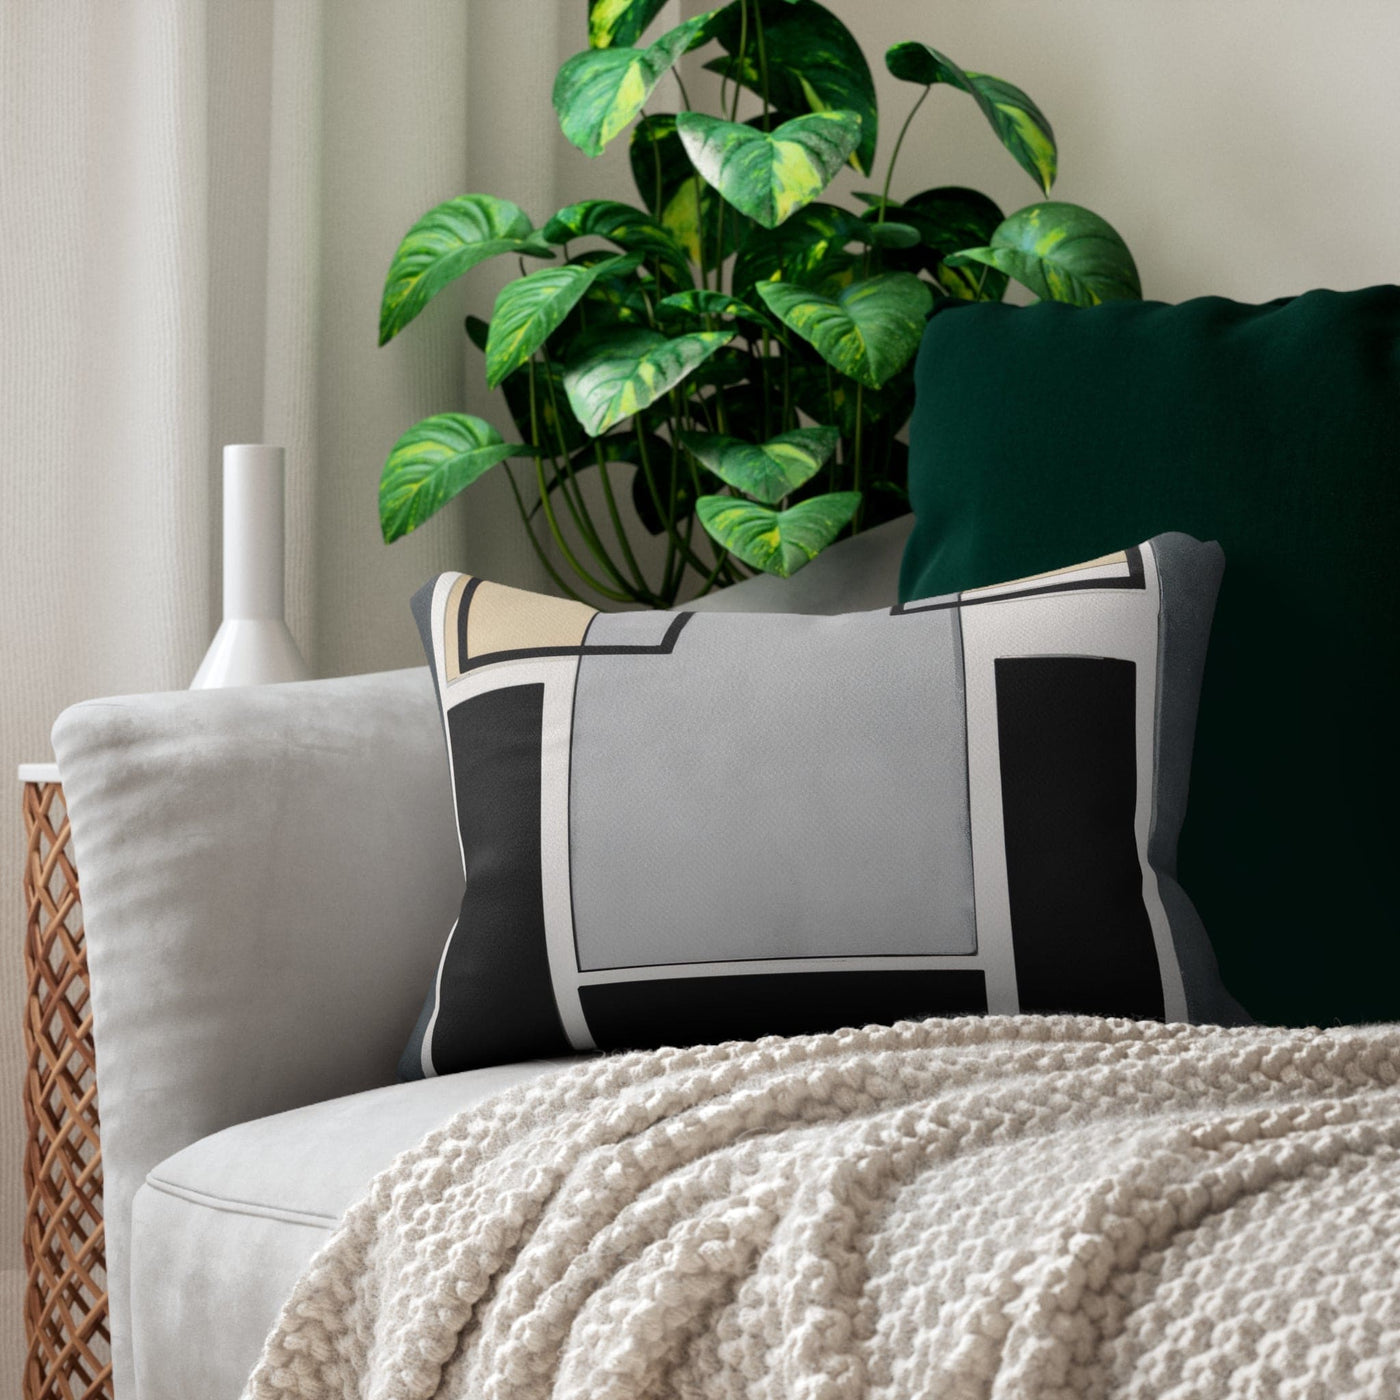 Decorative Lumbar Throw Pillow - Abstract Black Grey Brown Geometric